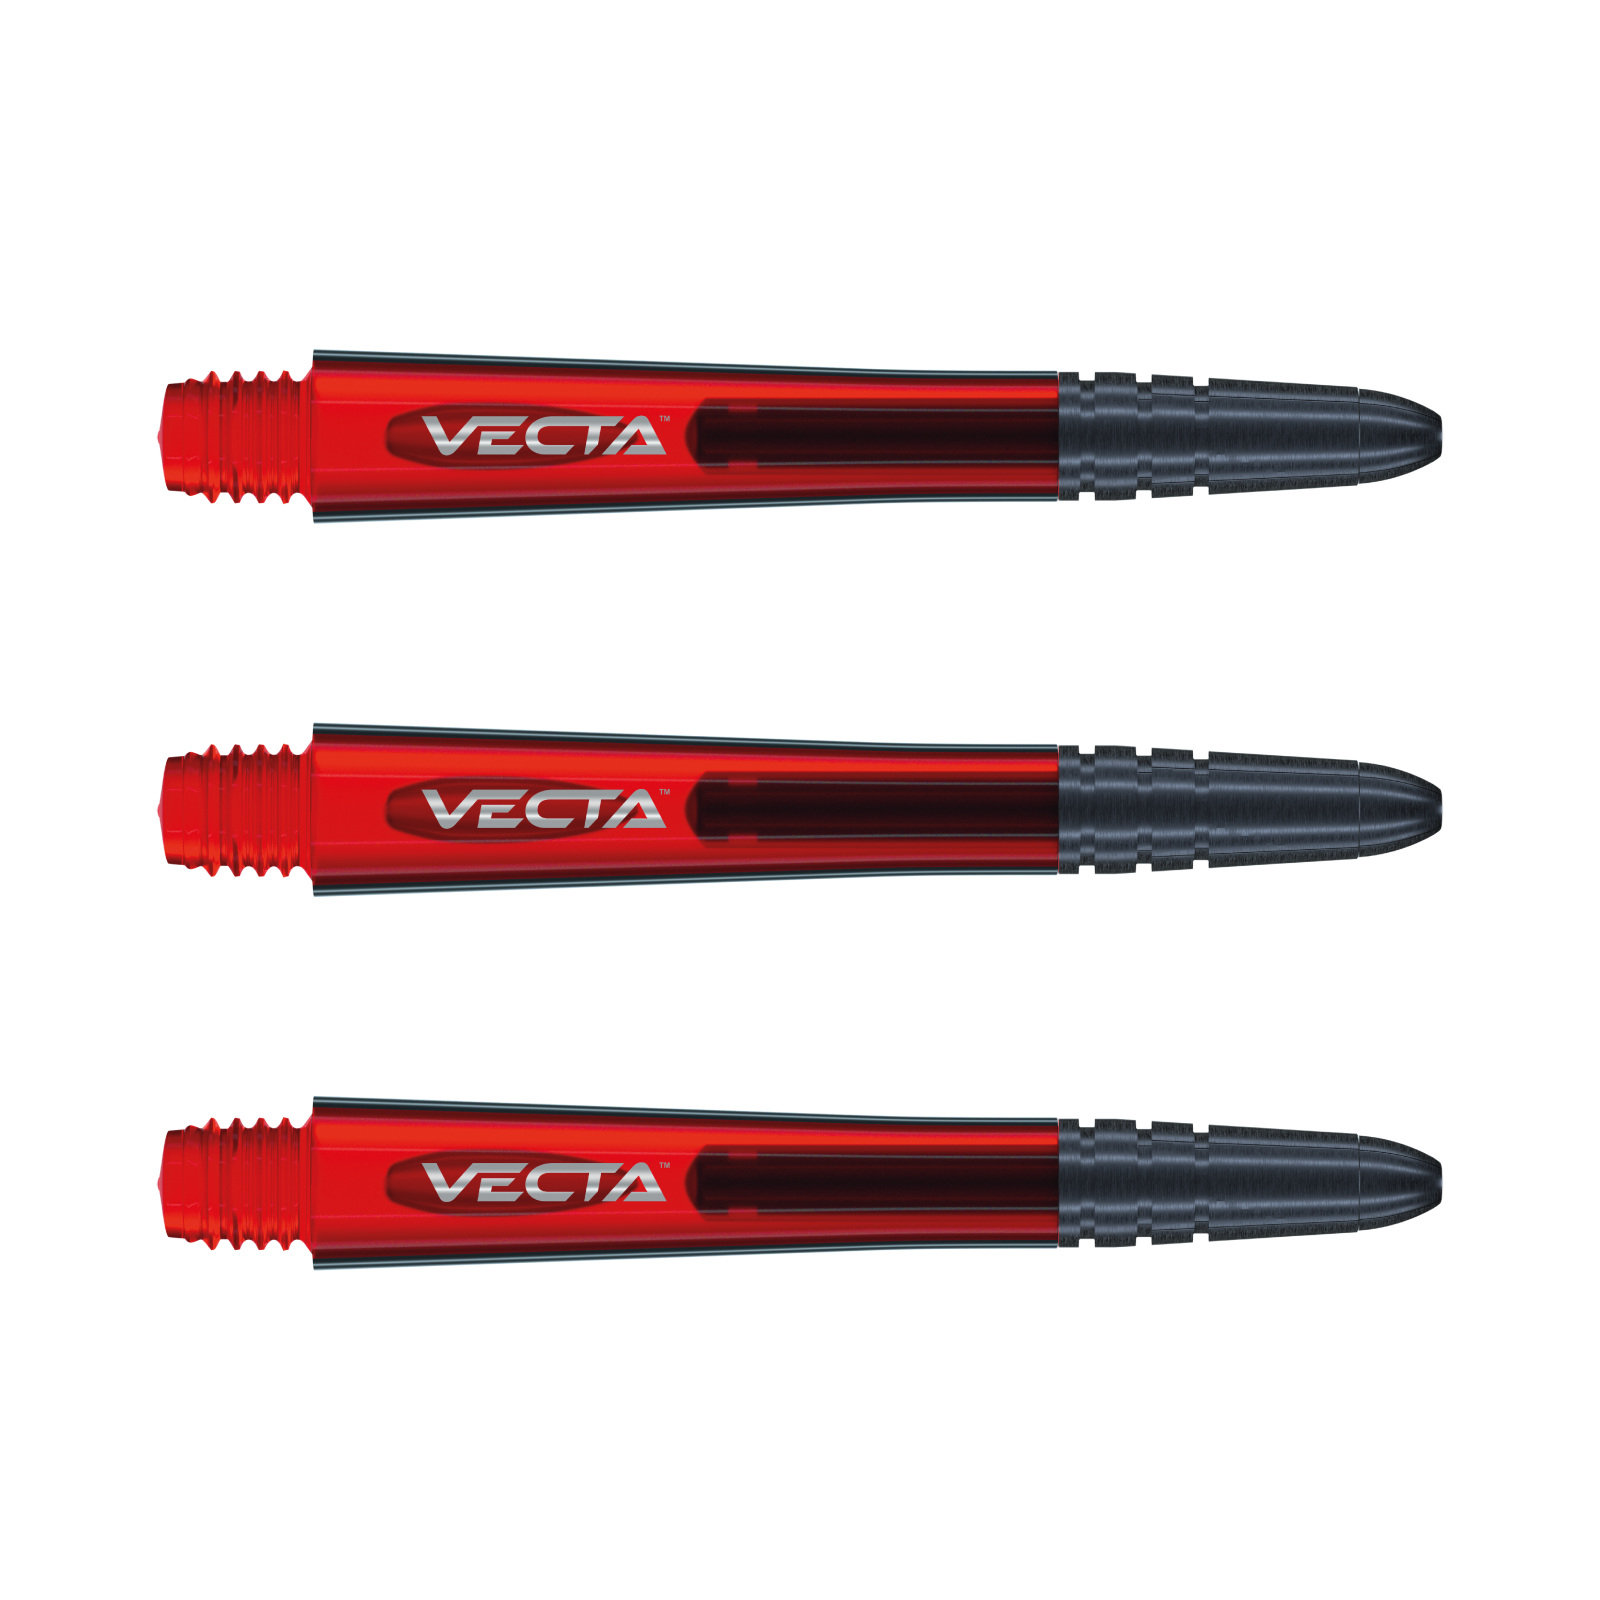 Vecta Red Medium – Image 1